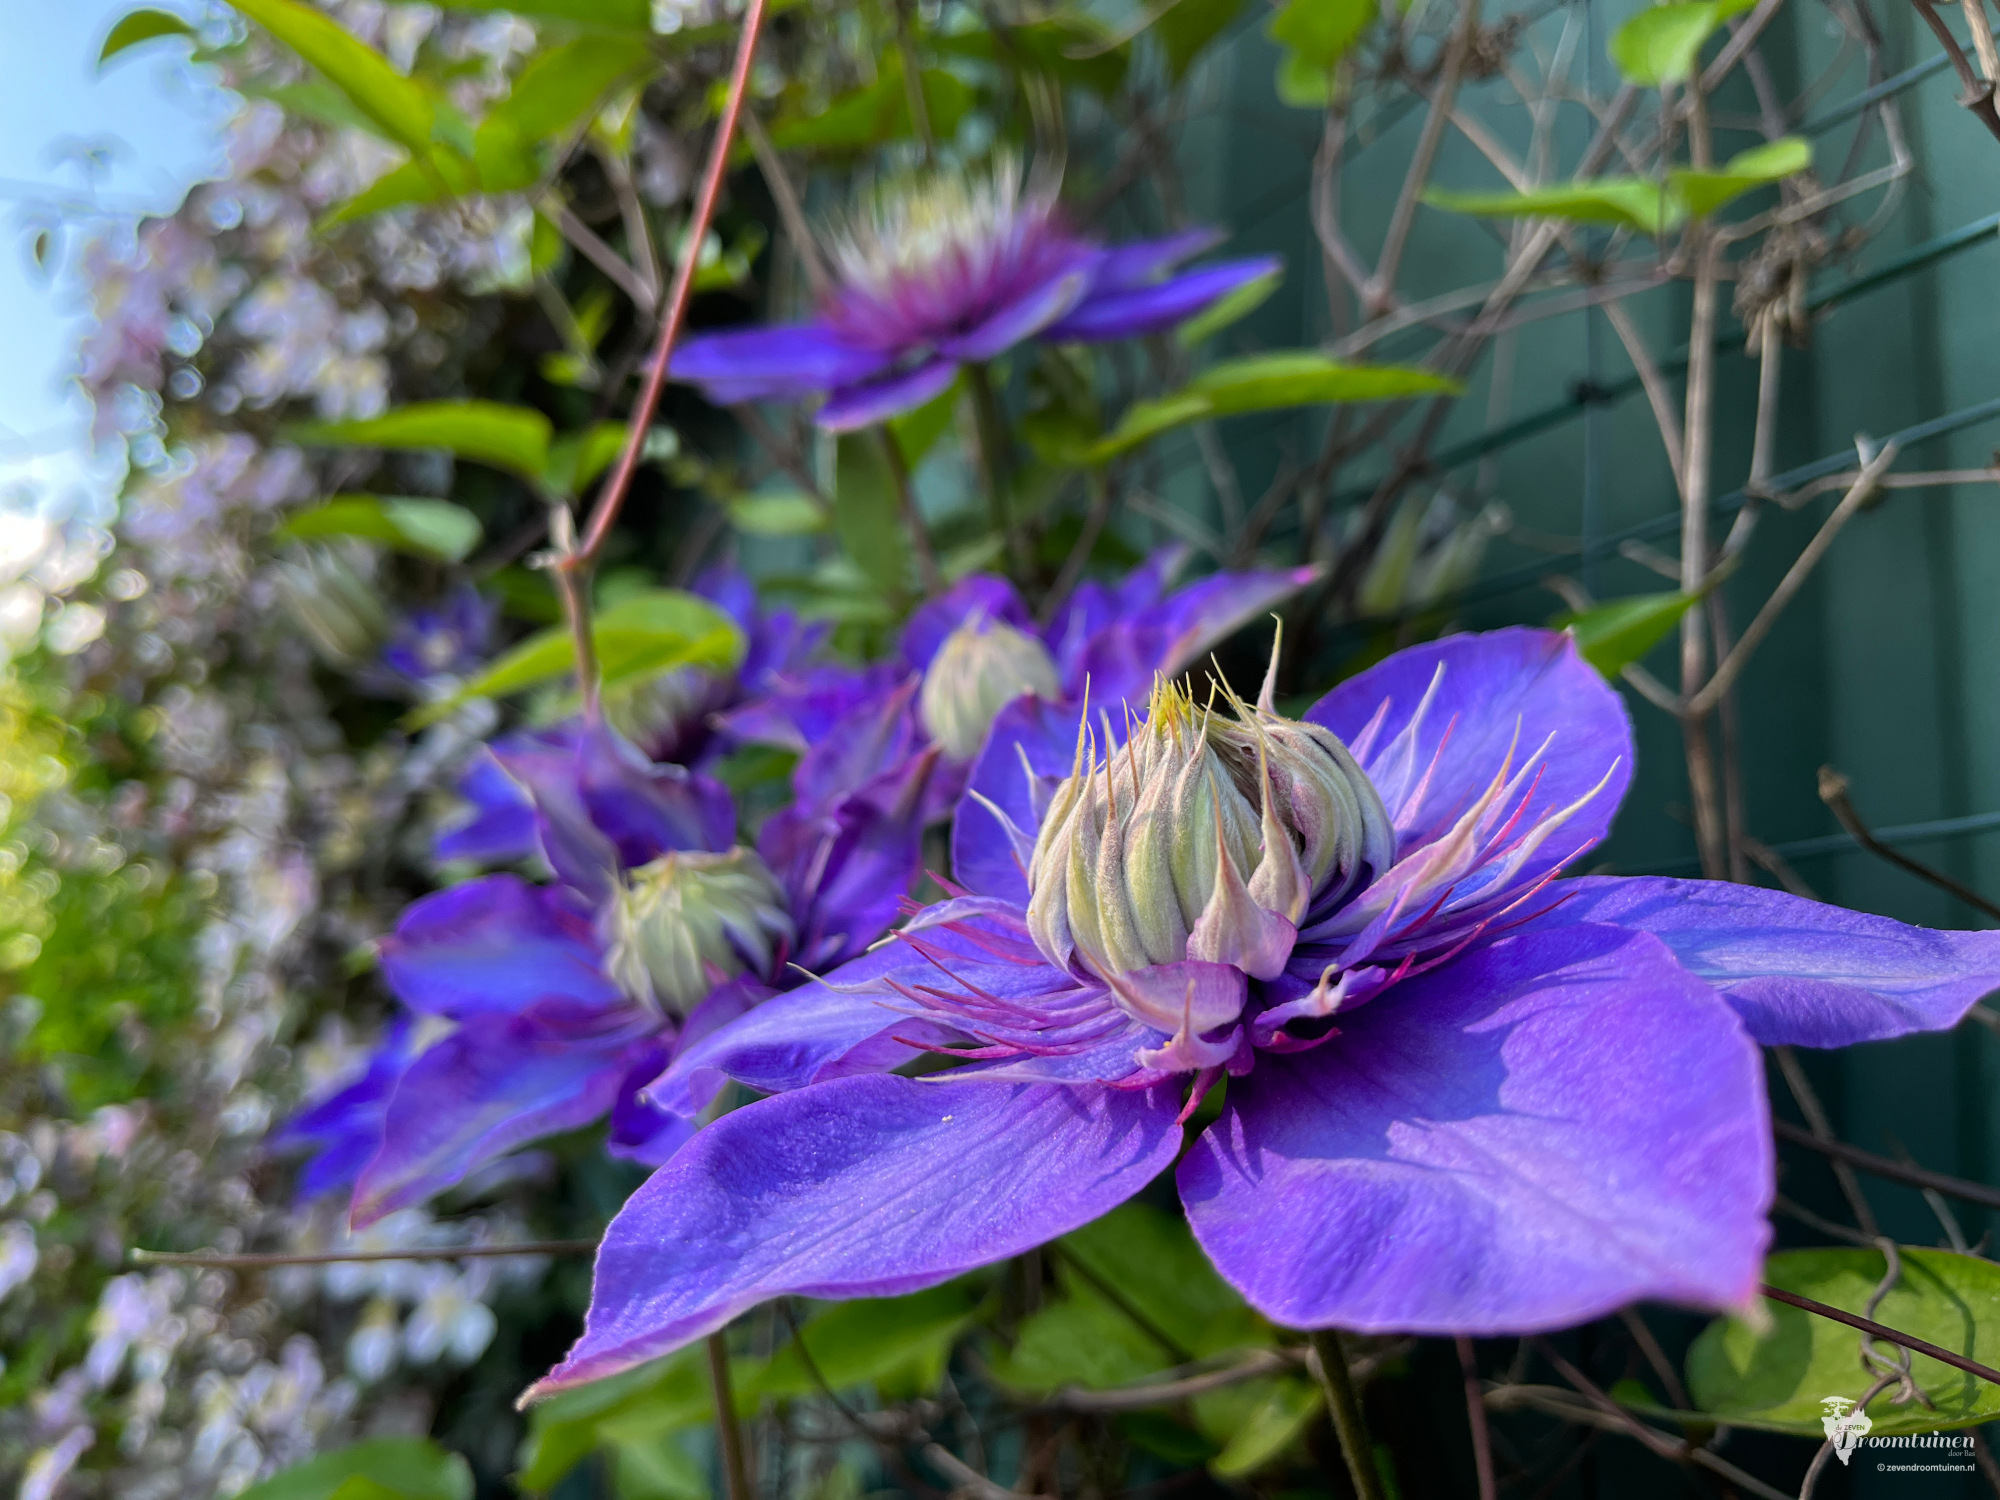 De gigantische bloemen van de Clematis multi blue. En waar sprookjesachtig tafereel!